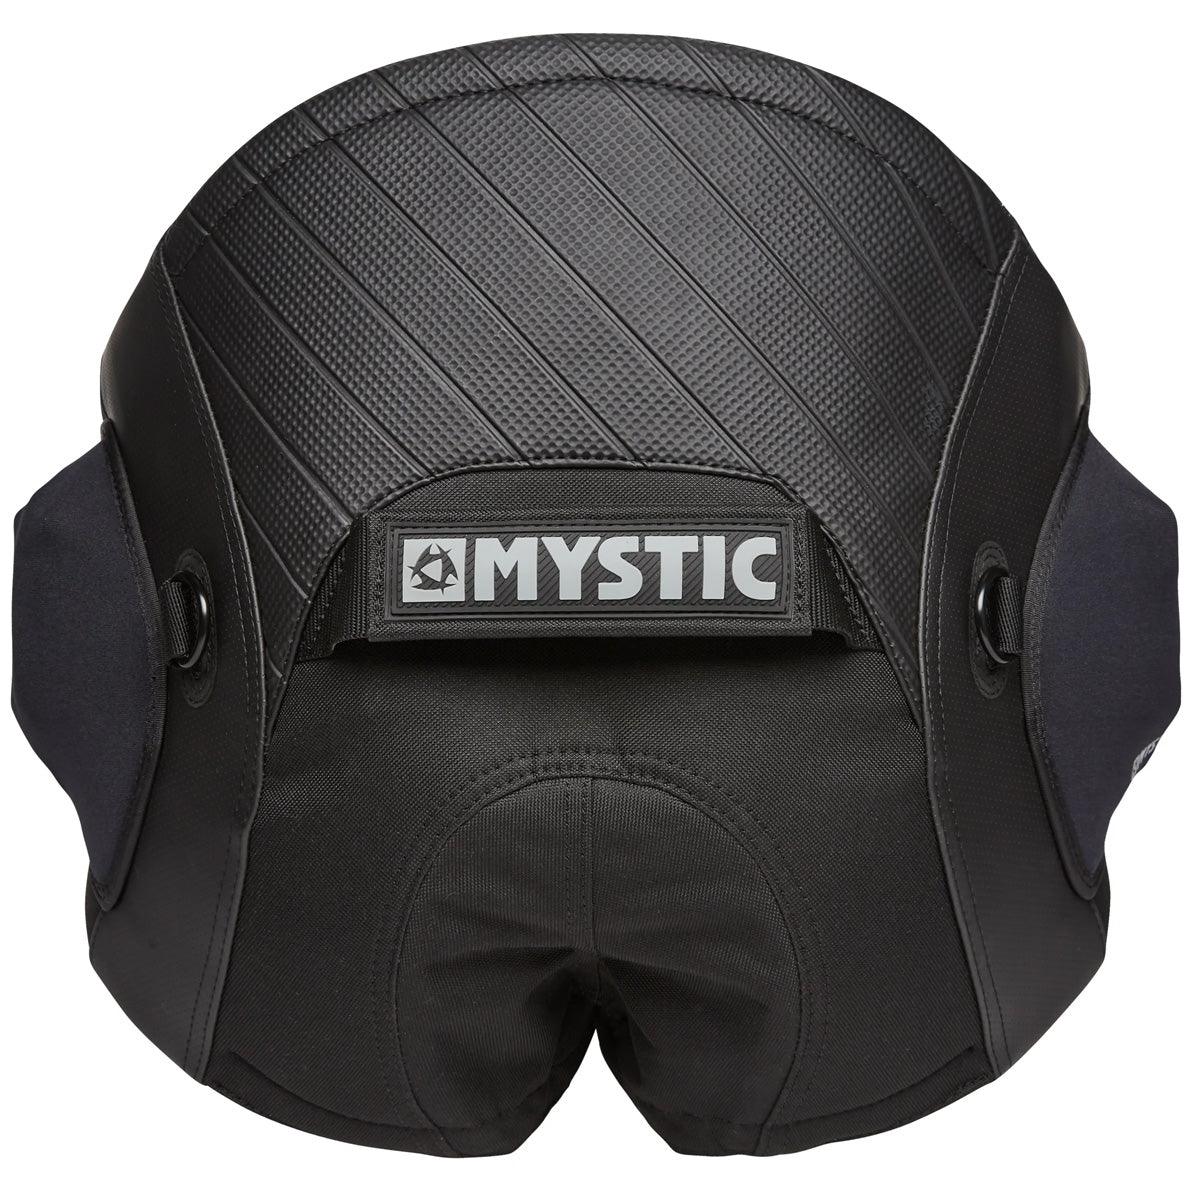 Mystic Aviator Seat Harness - Kiteshop.com